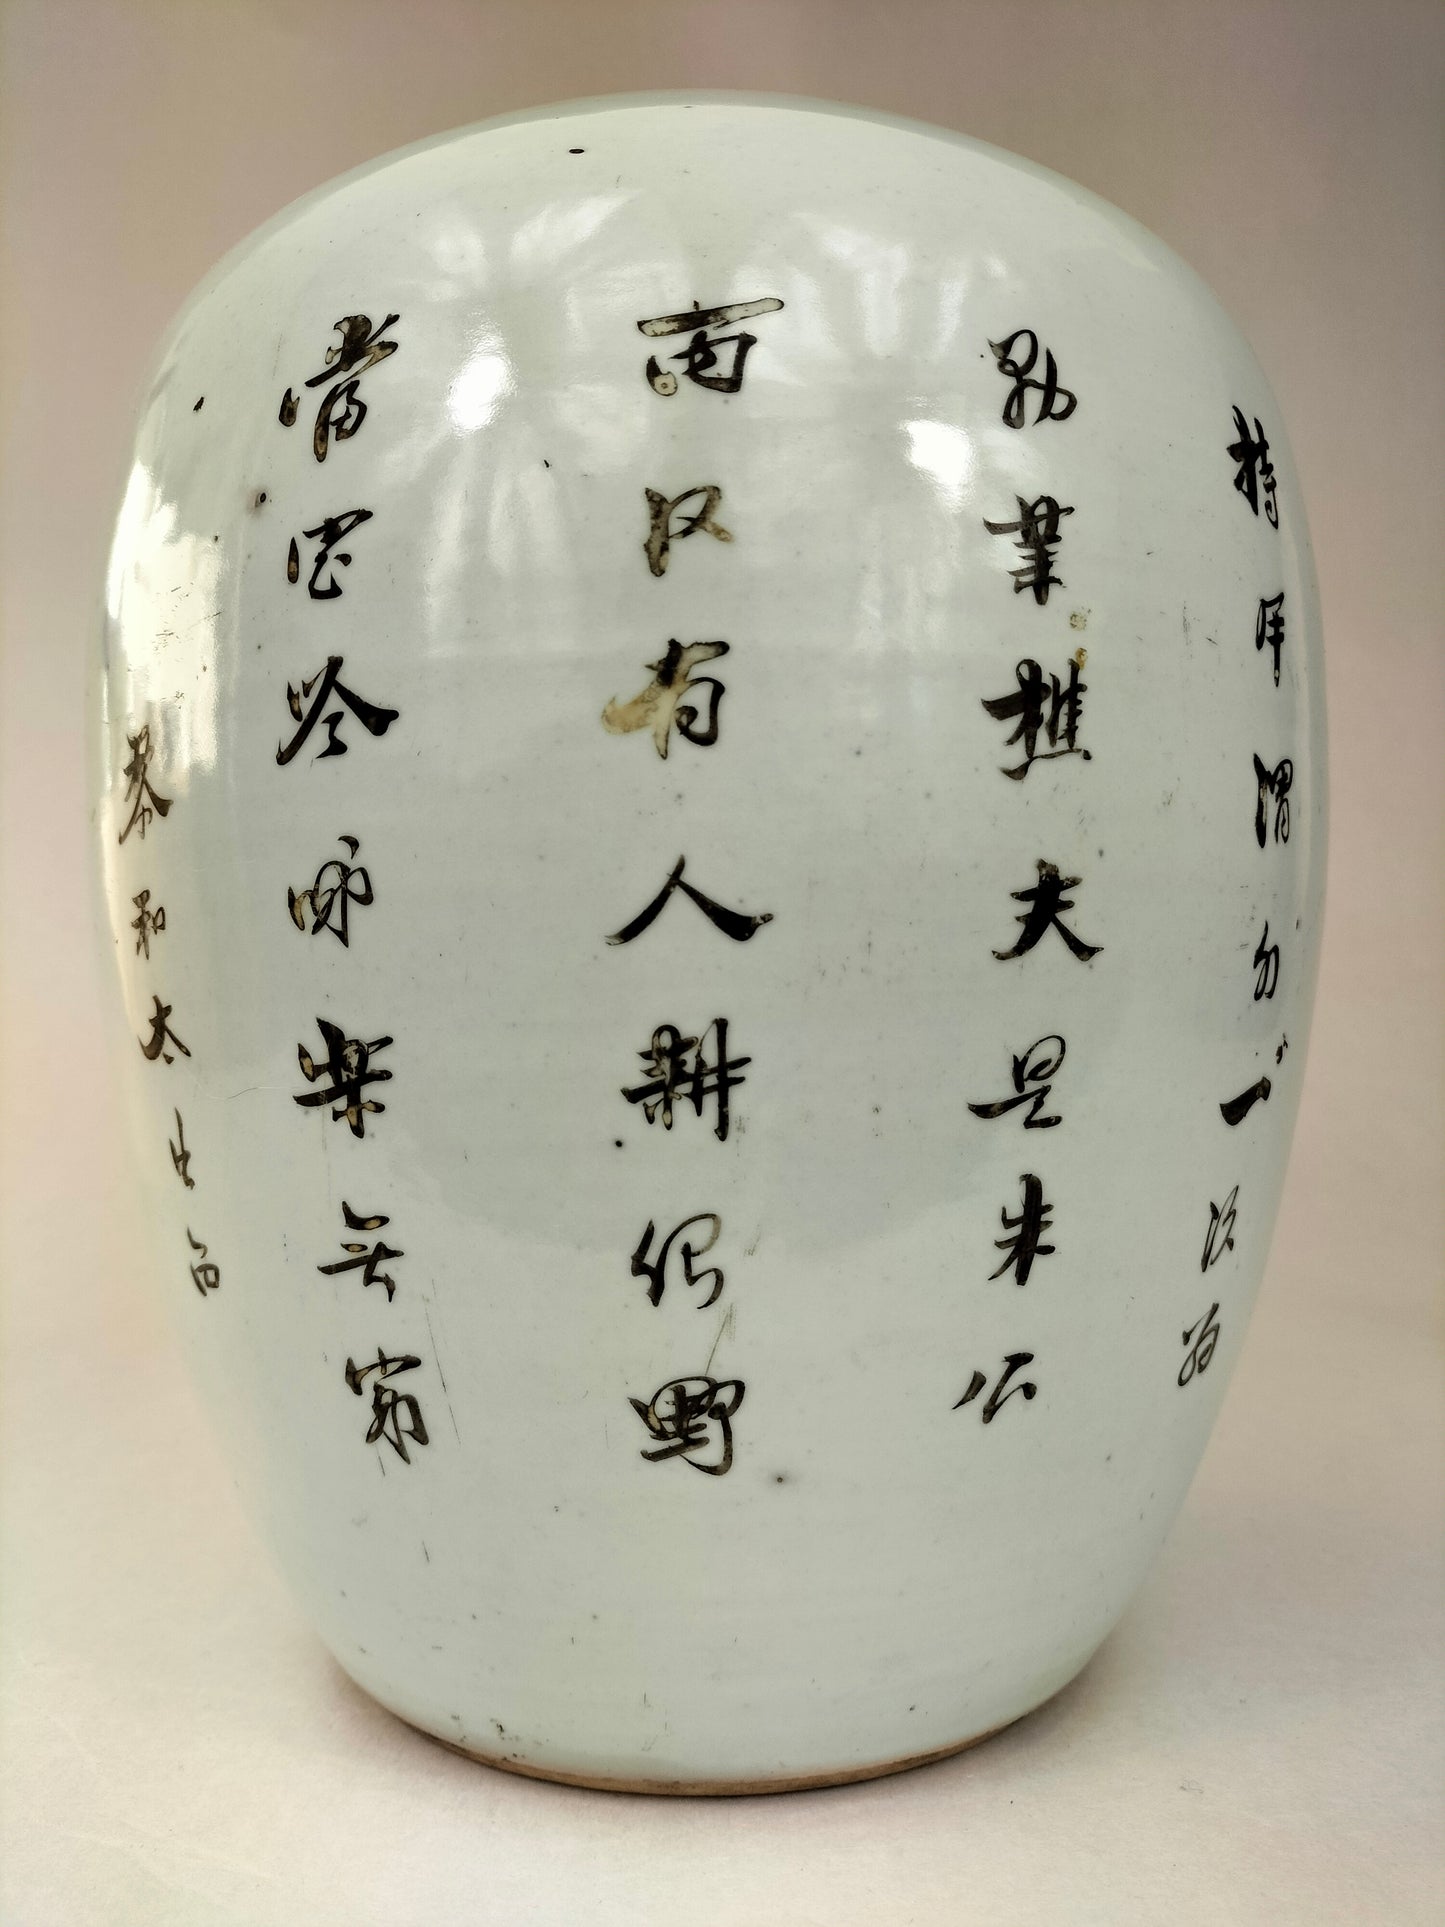 جرة زنجبيل صينية قديمة مزينة بأشكال وجاموس ماء // فترة الجمهورية (1912-1949)